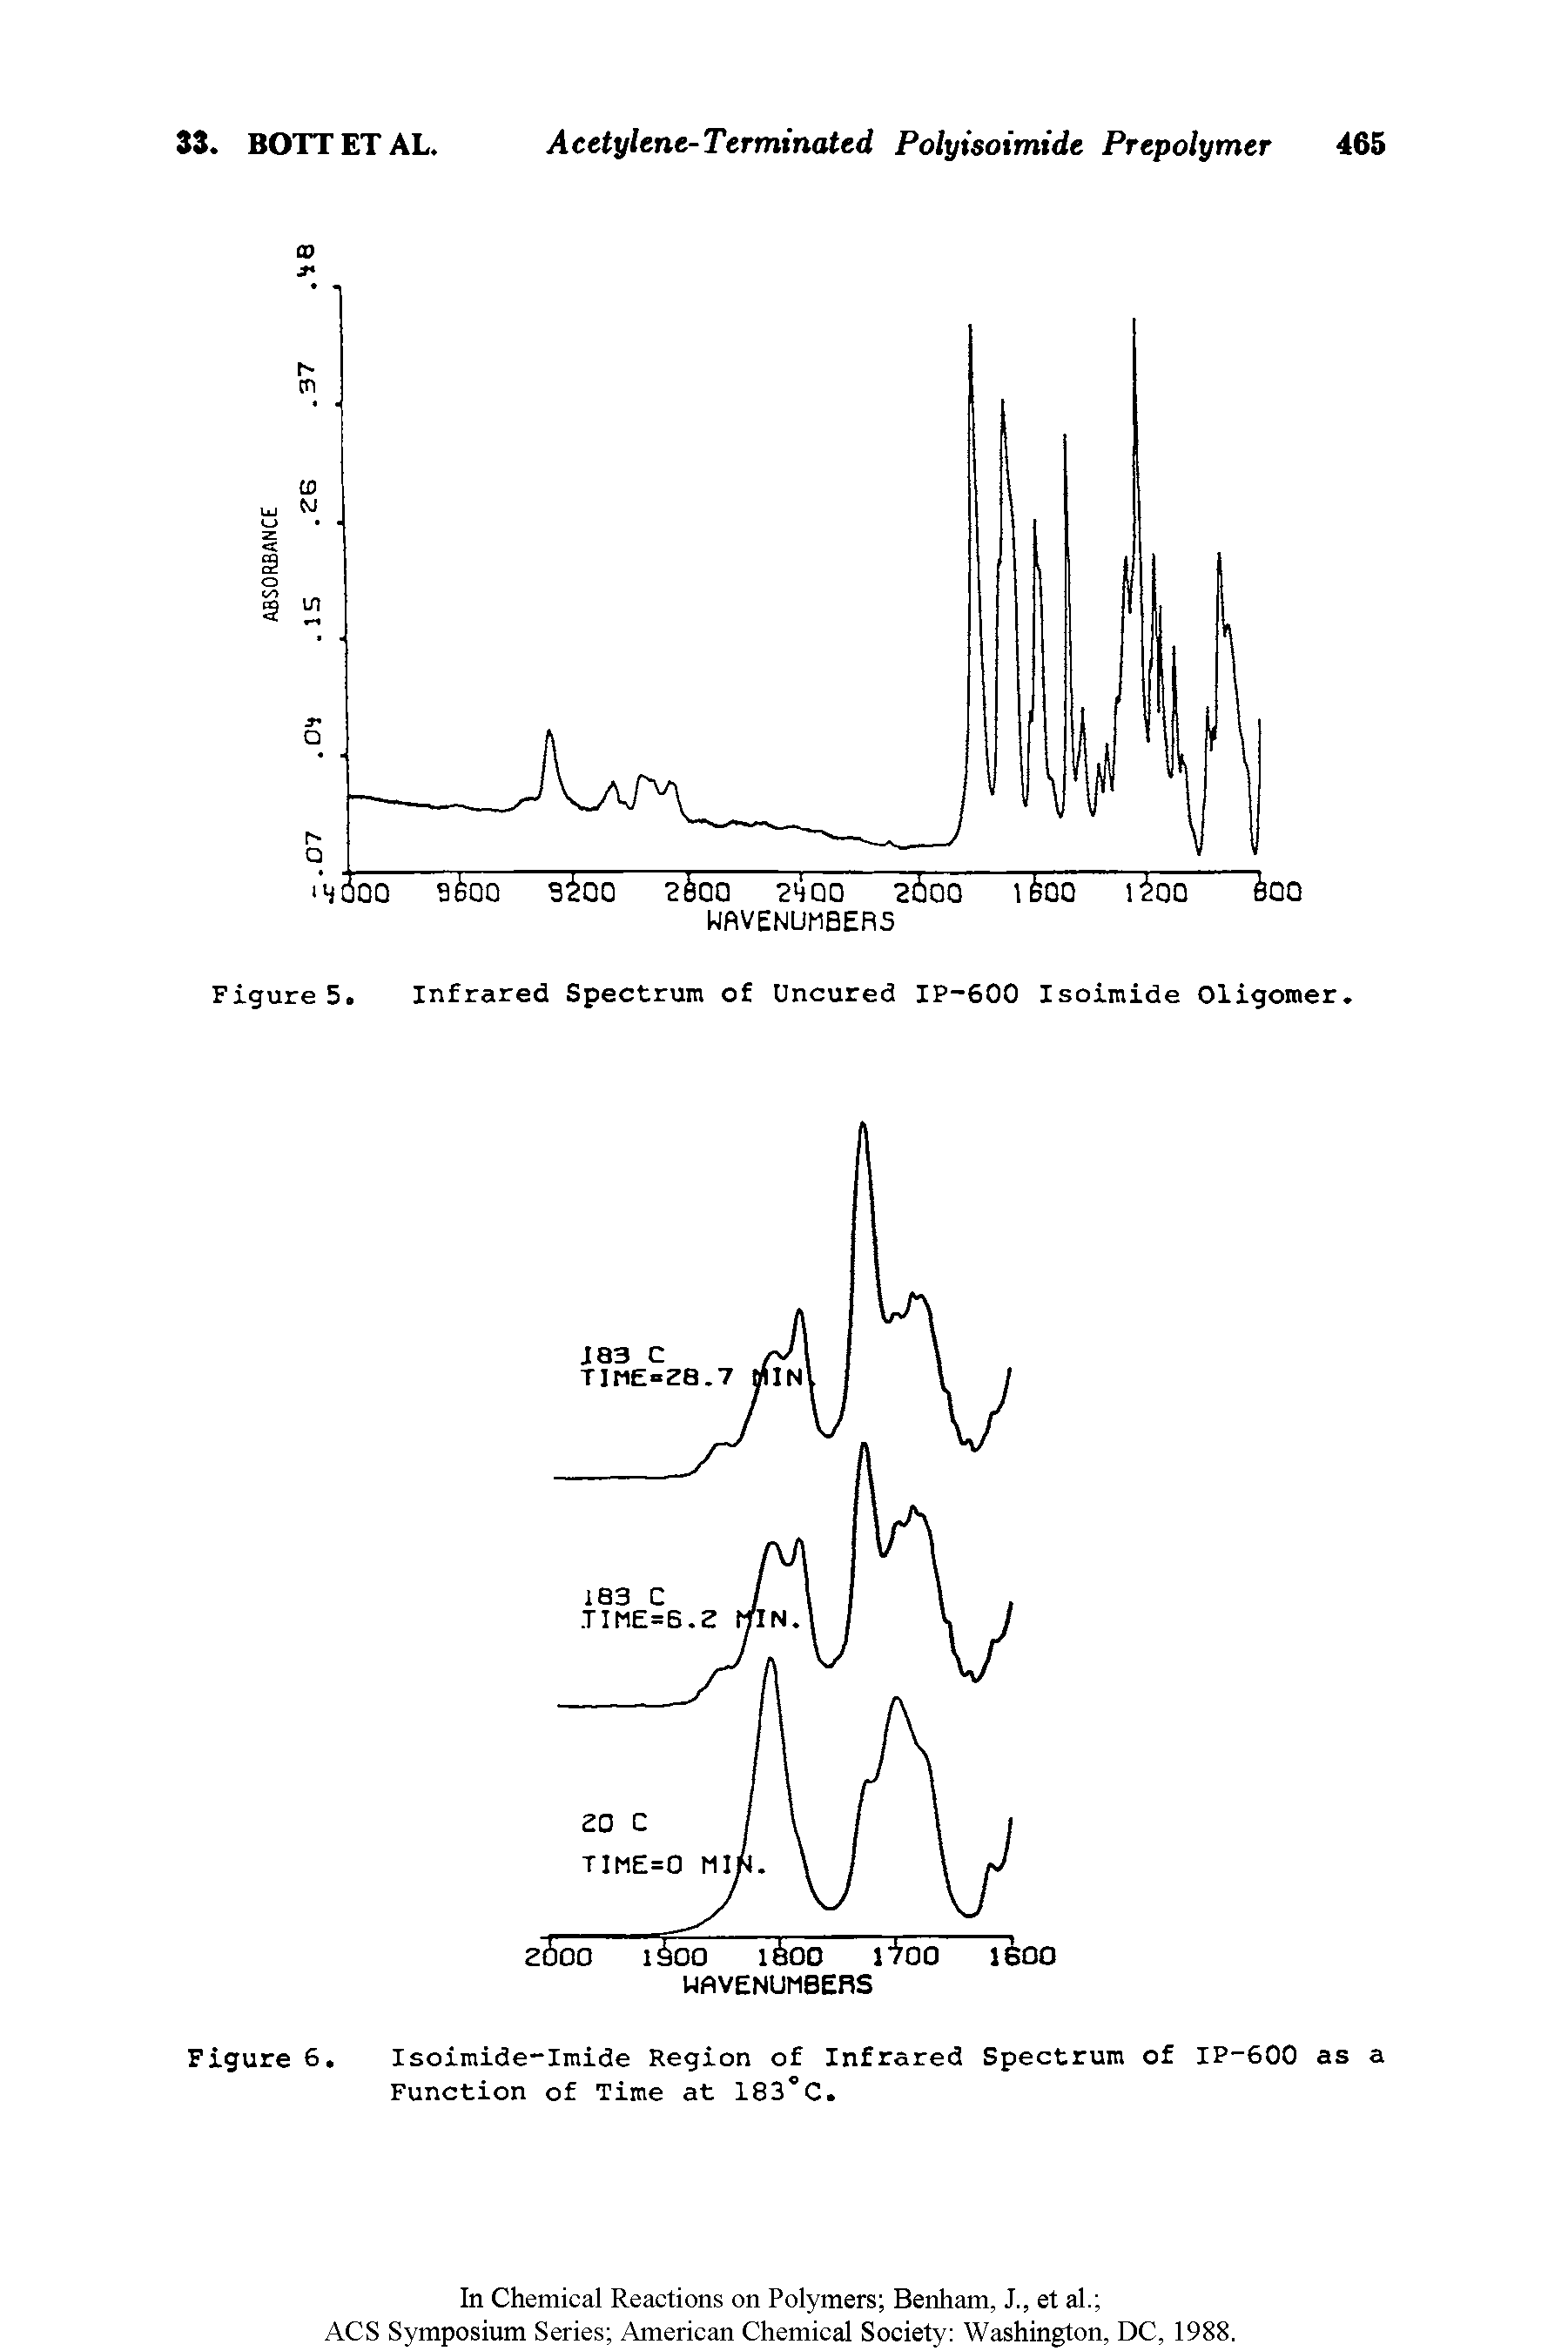 Figure 5. Infrared Spectrum of Uncured IP-600 Isoimide Oligomer.